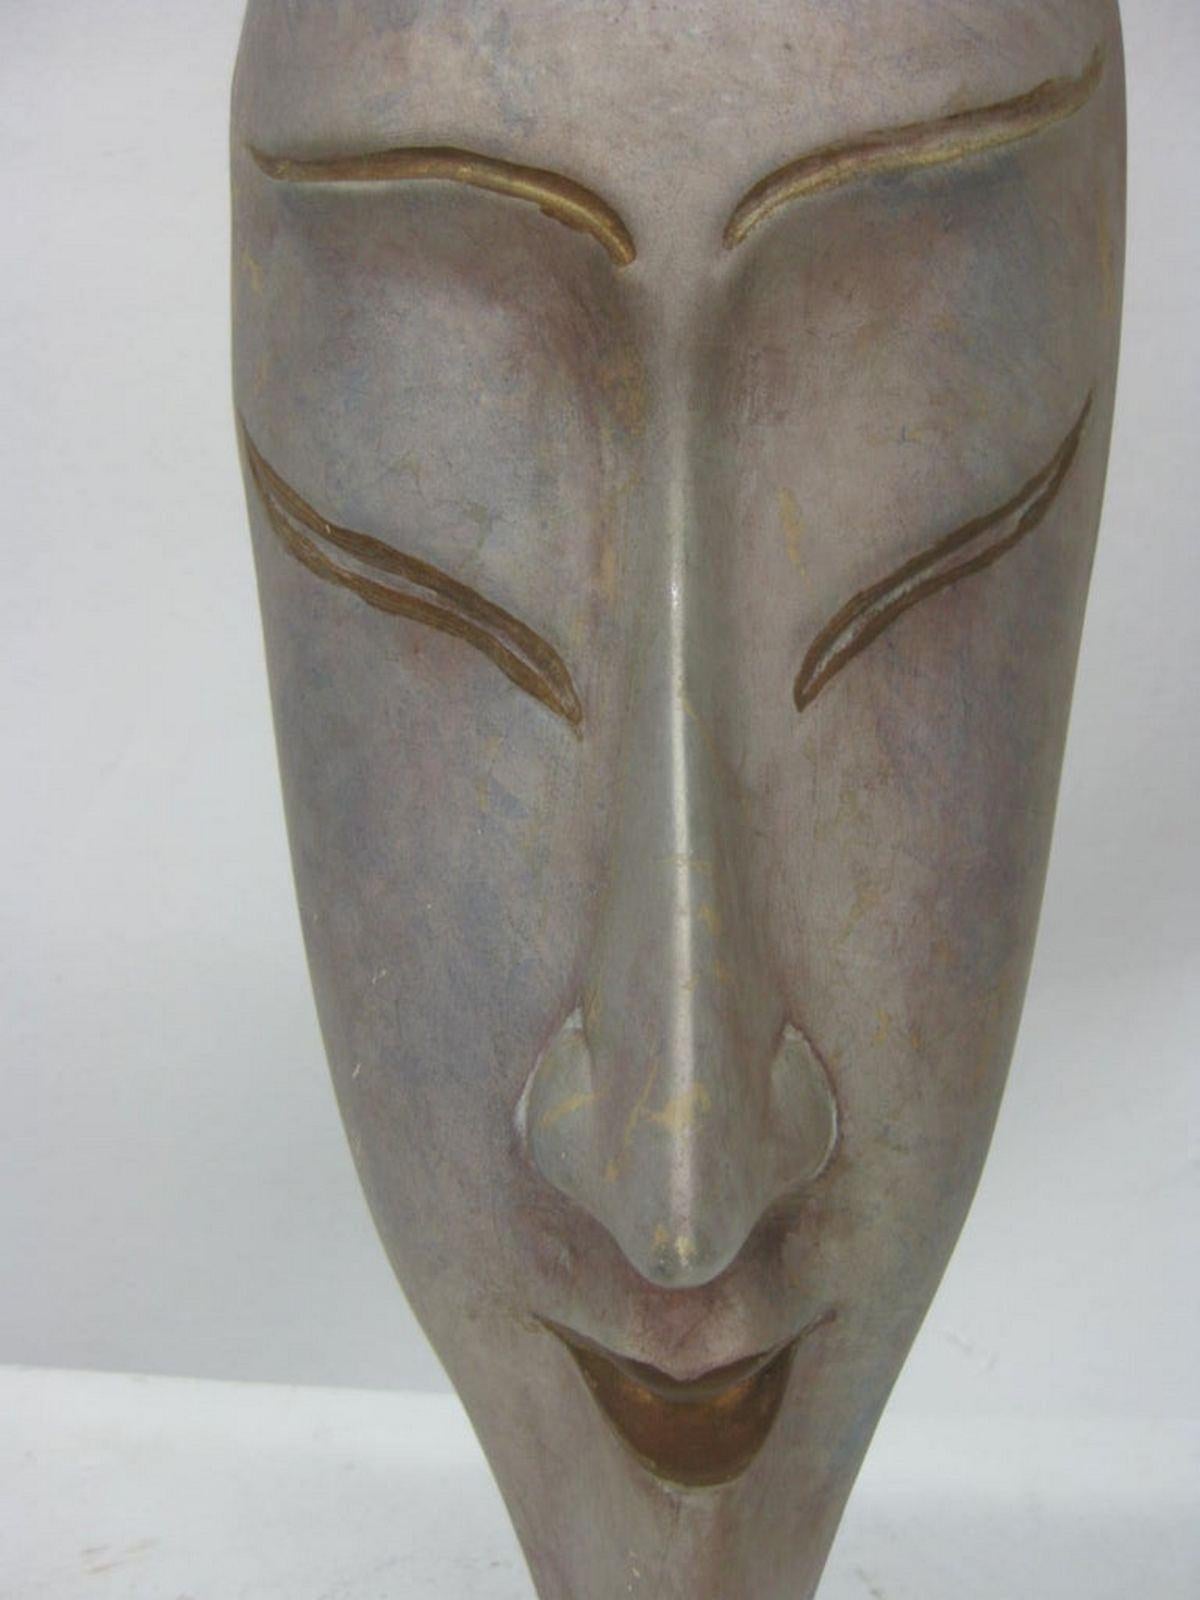 Ce masque peint à la main présente un visage féminin long. Les accents dorés qui soulignent les lèvres et les yeux suggèrent la culture japonaise.
Il repose sur une base transparente montée en Lucite.